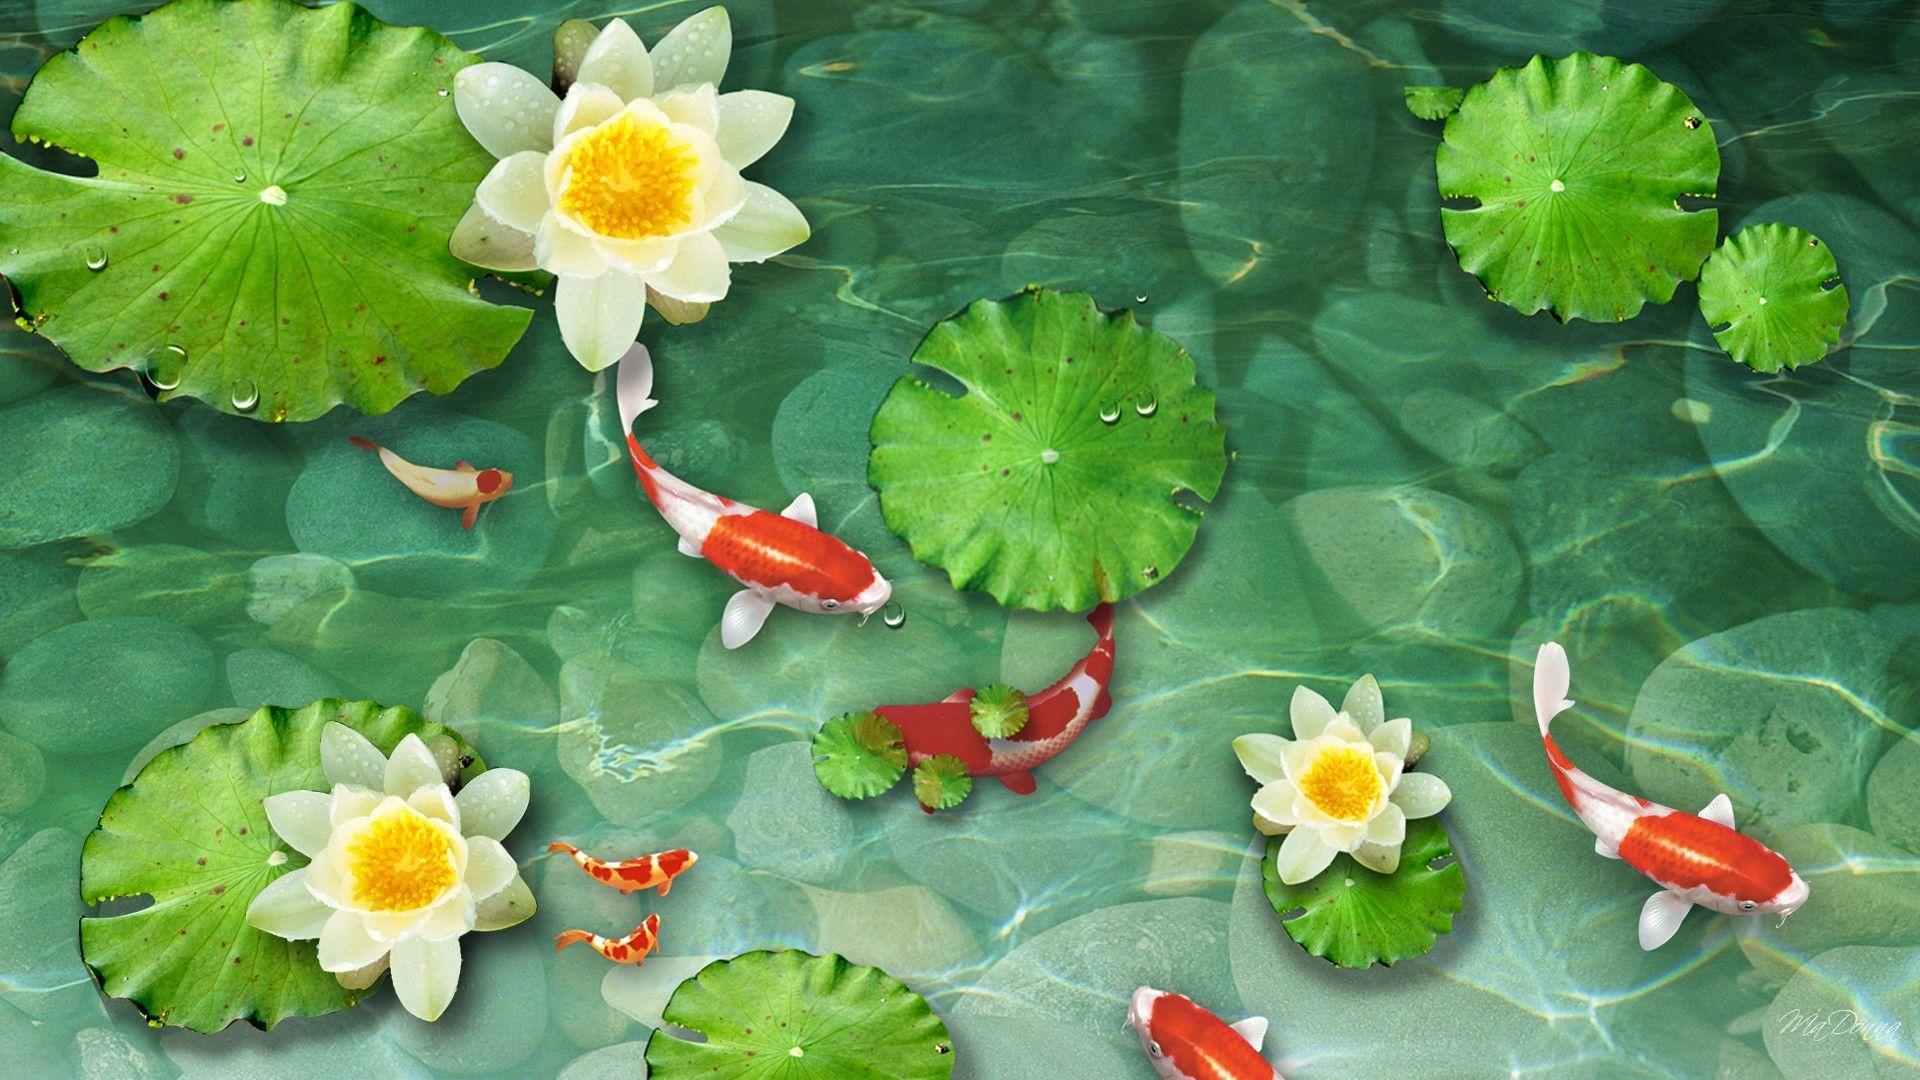 Koi Pond Wallpaper. Koi, Fish